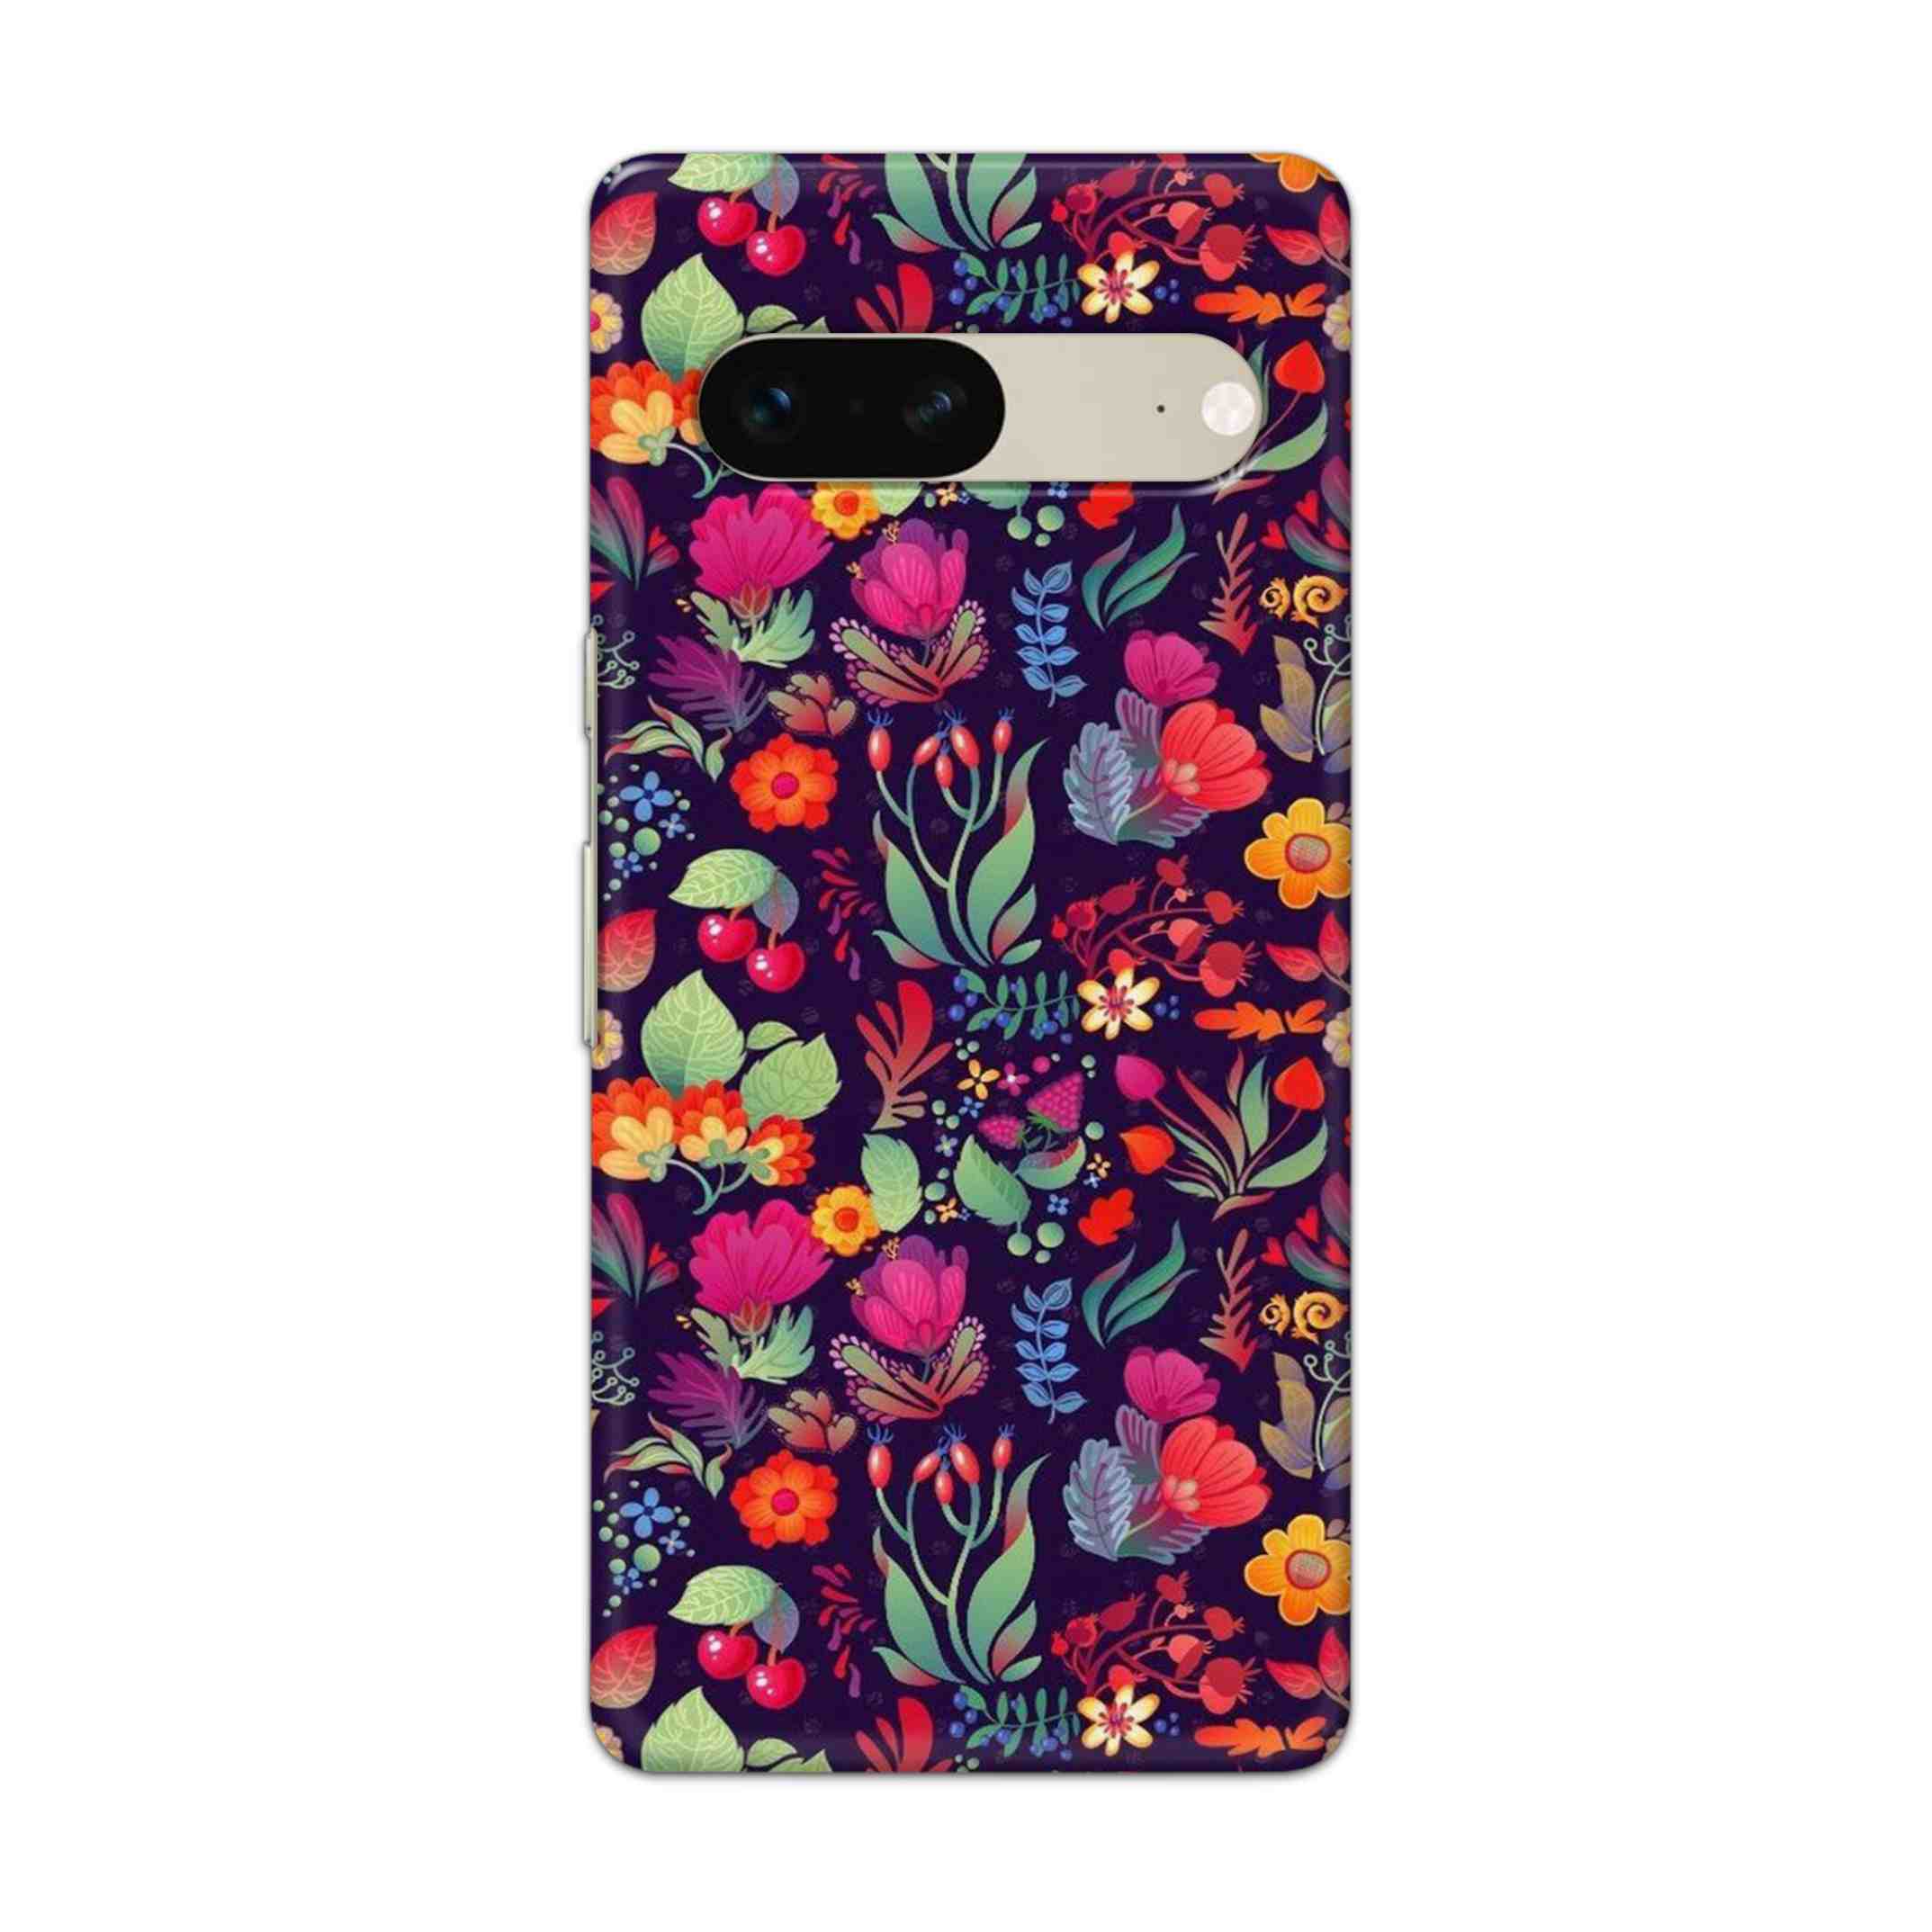 Buy Fruits Flower Hard Back Mobile Phone Case Cover For Google Pixel 7 Online